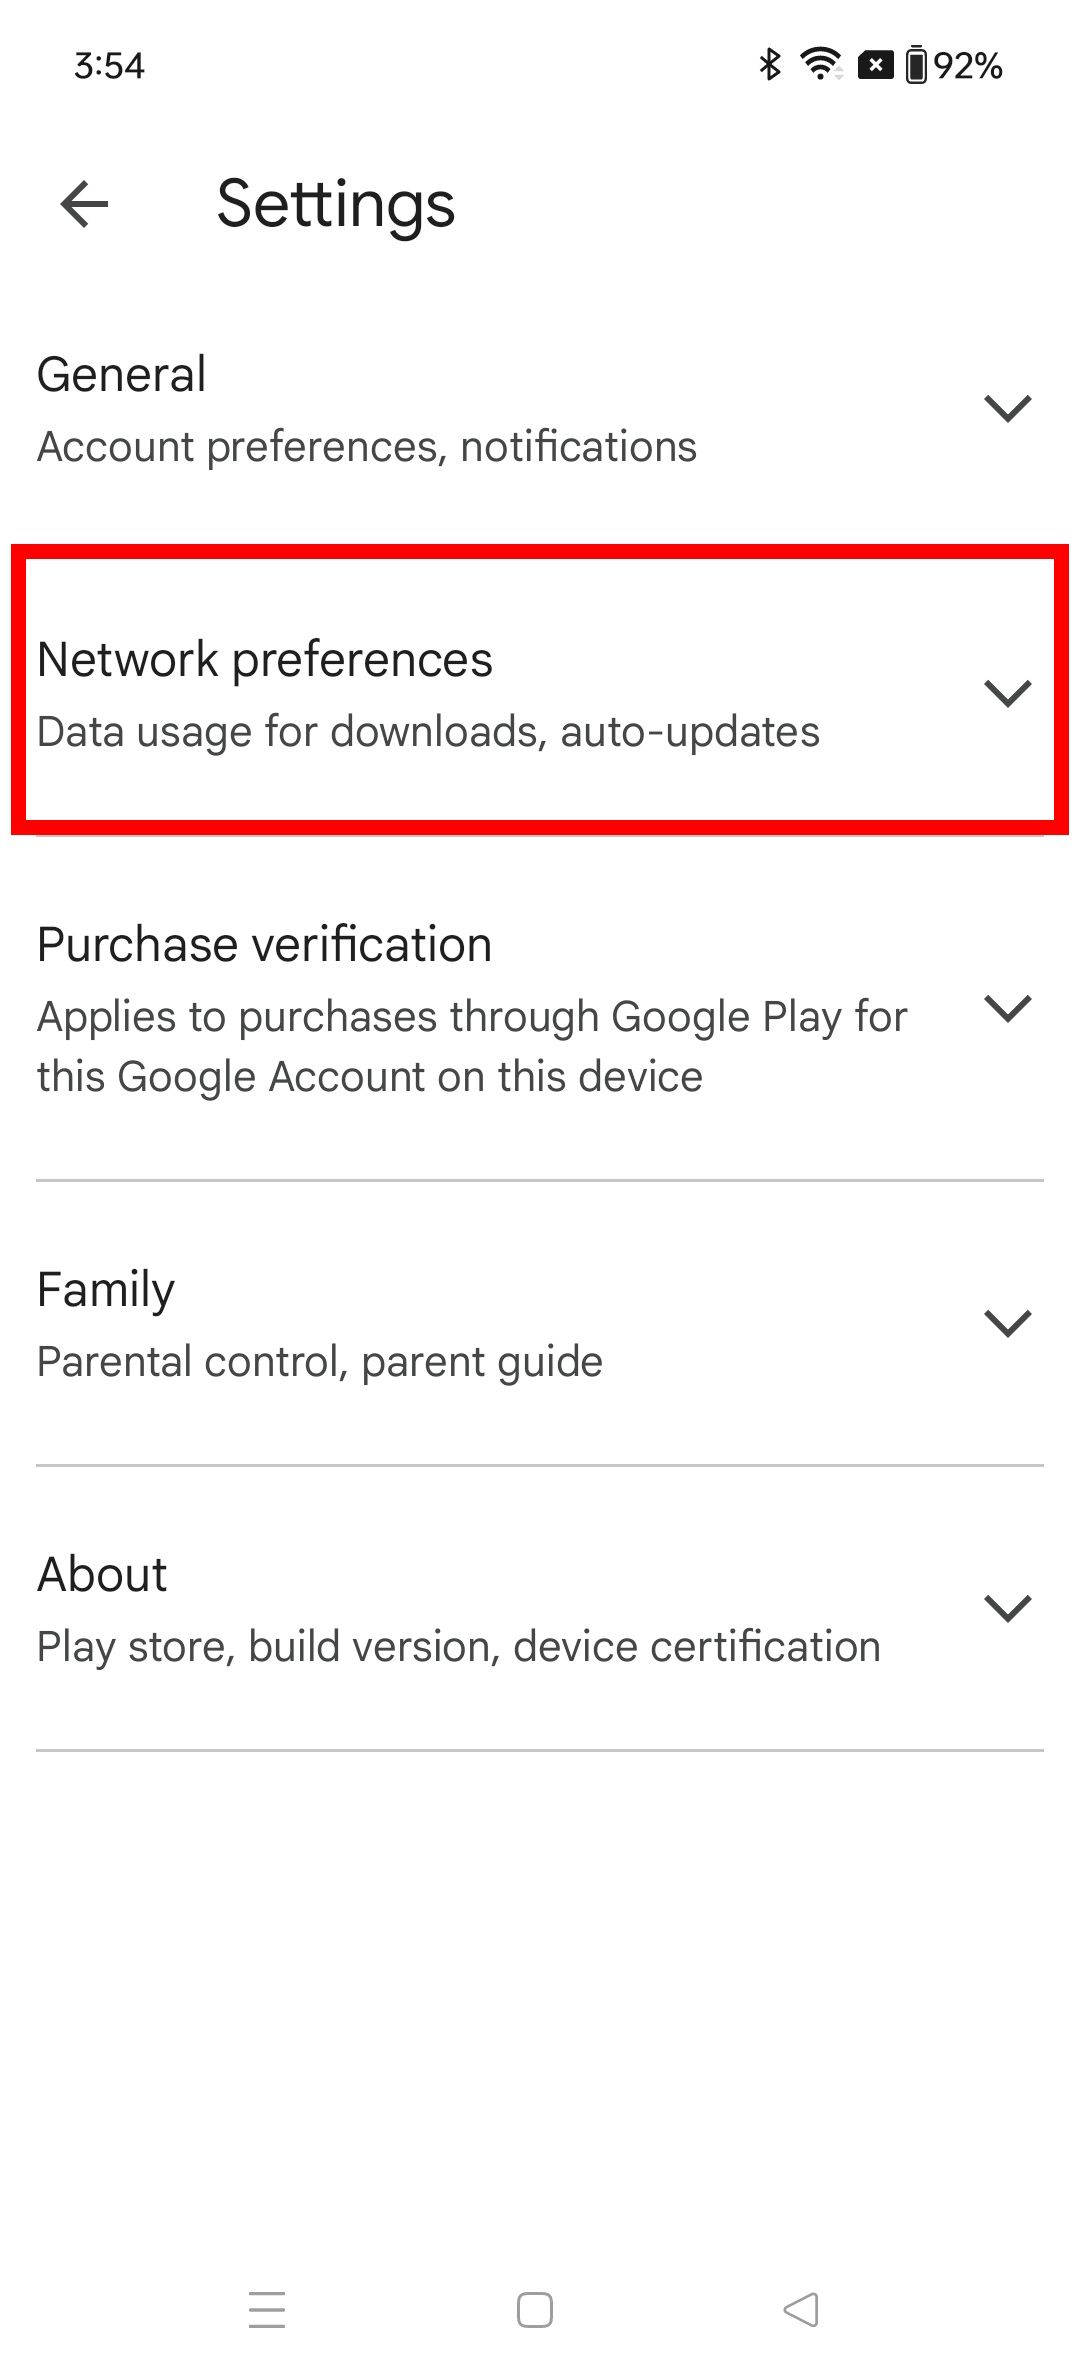 Contorno de retângulo vermelho destacando as preferências de rede nas configurações da Google Play Store no OnePlus